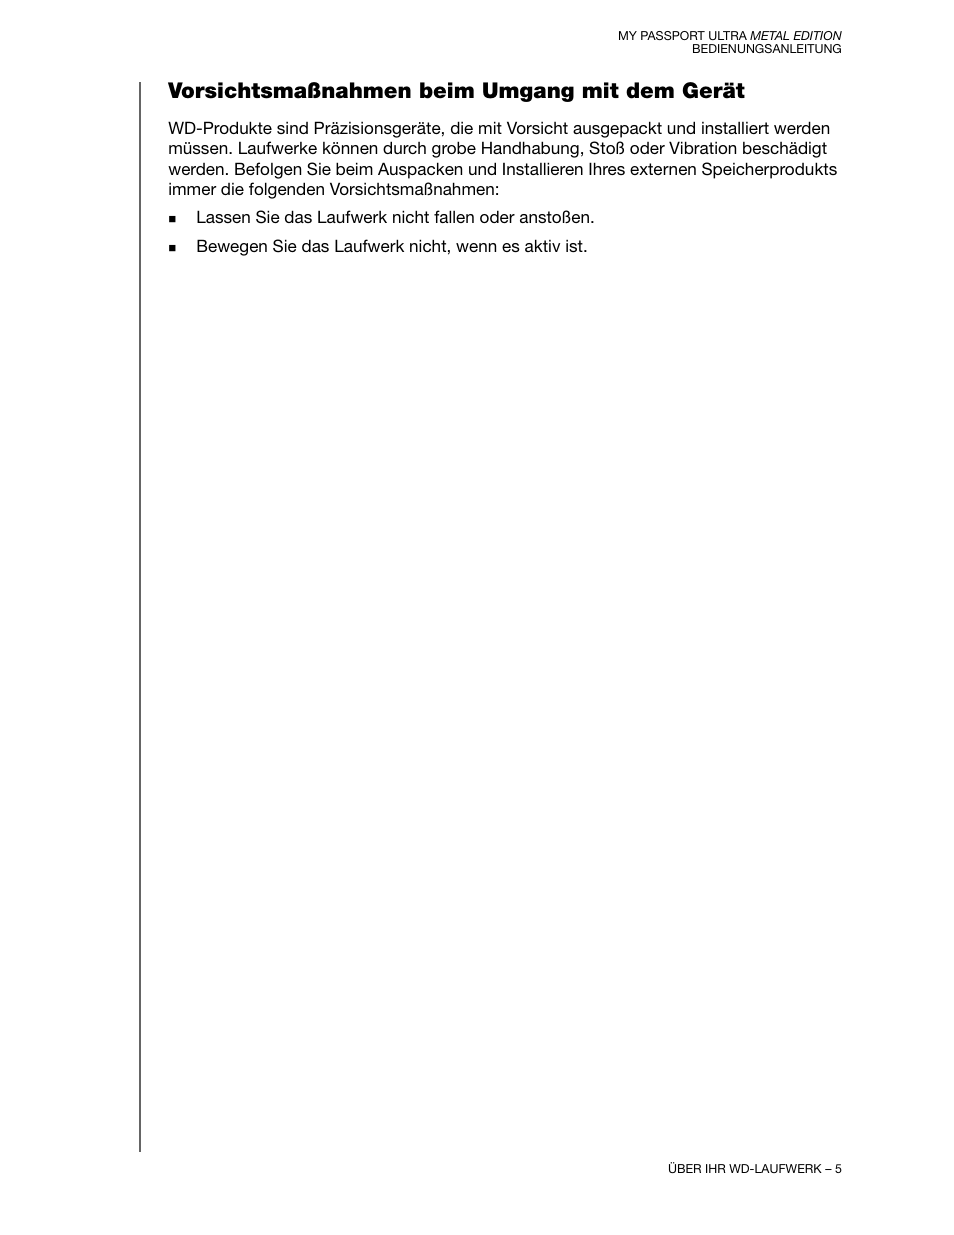 Vorsichtsmaßnahmen beim umgang mit dem gerät | Western Digital My Passport Ultra Metal User Manual Benutzerhandbuch | Seite 10 / 89